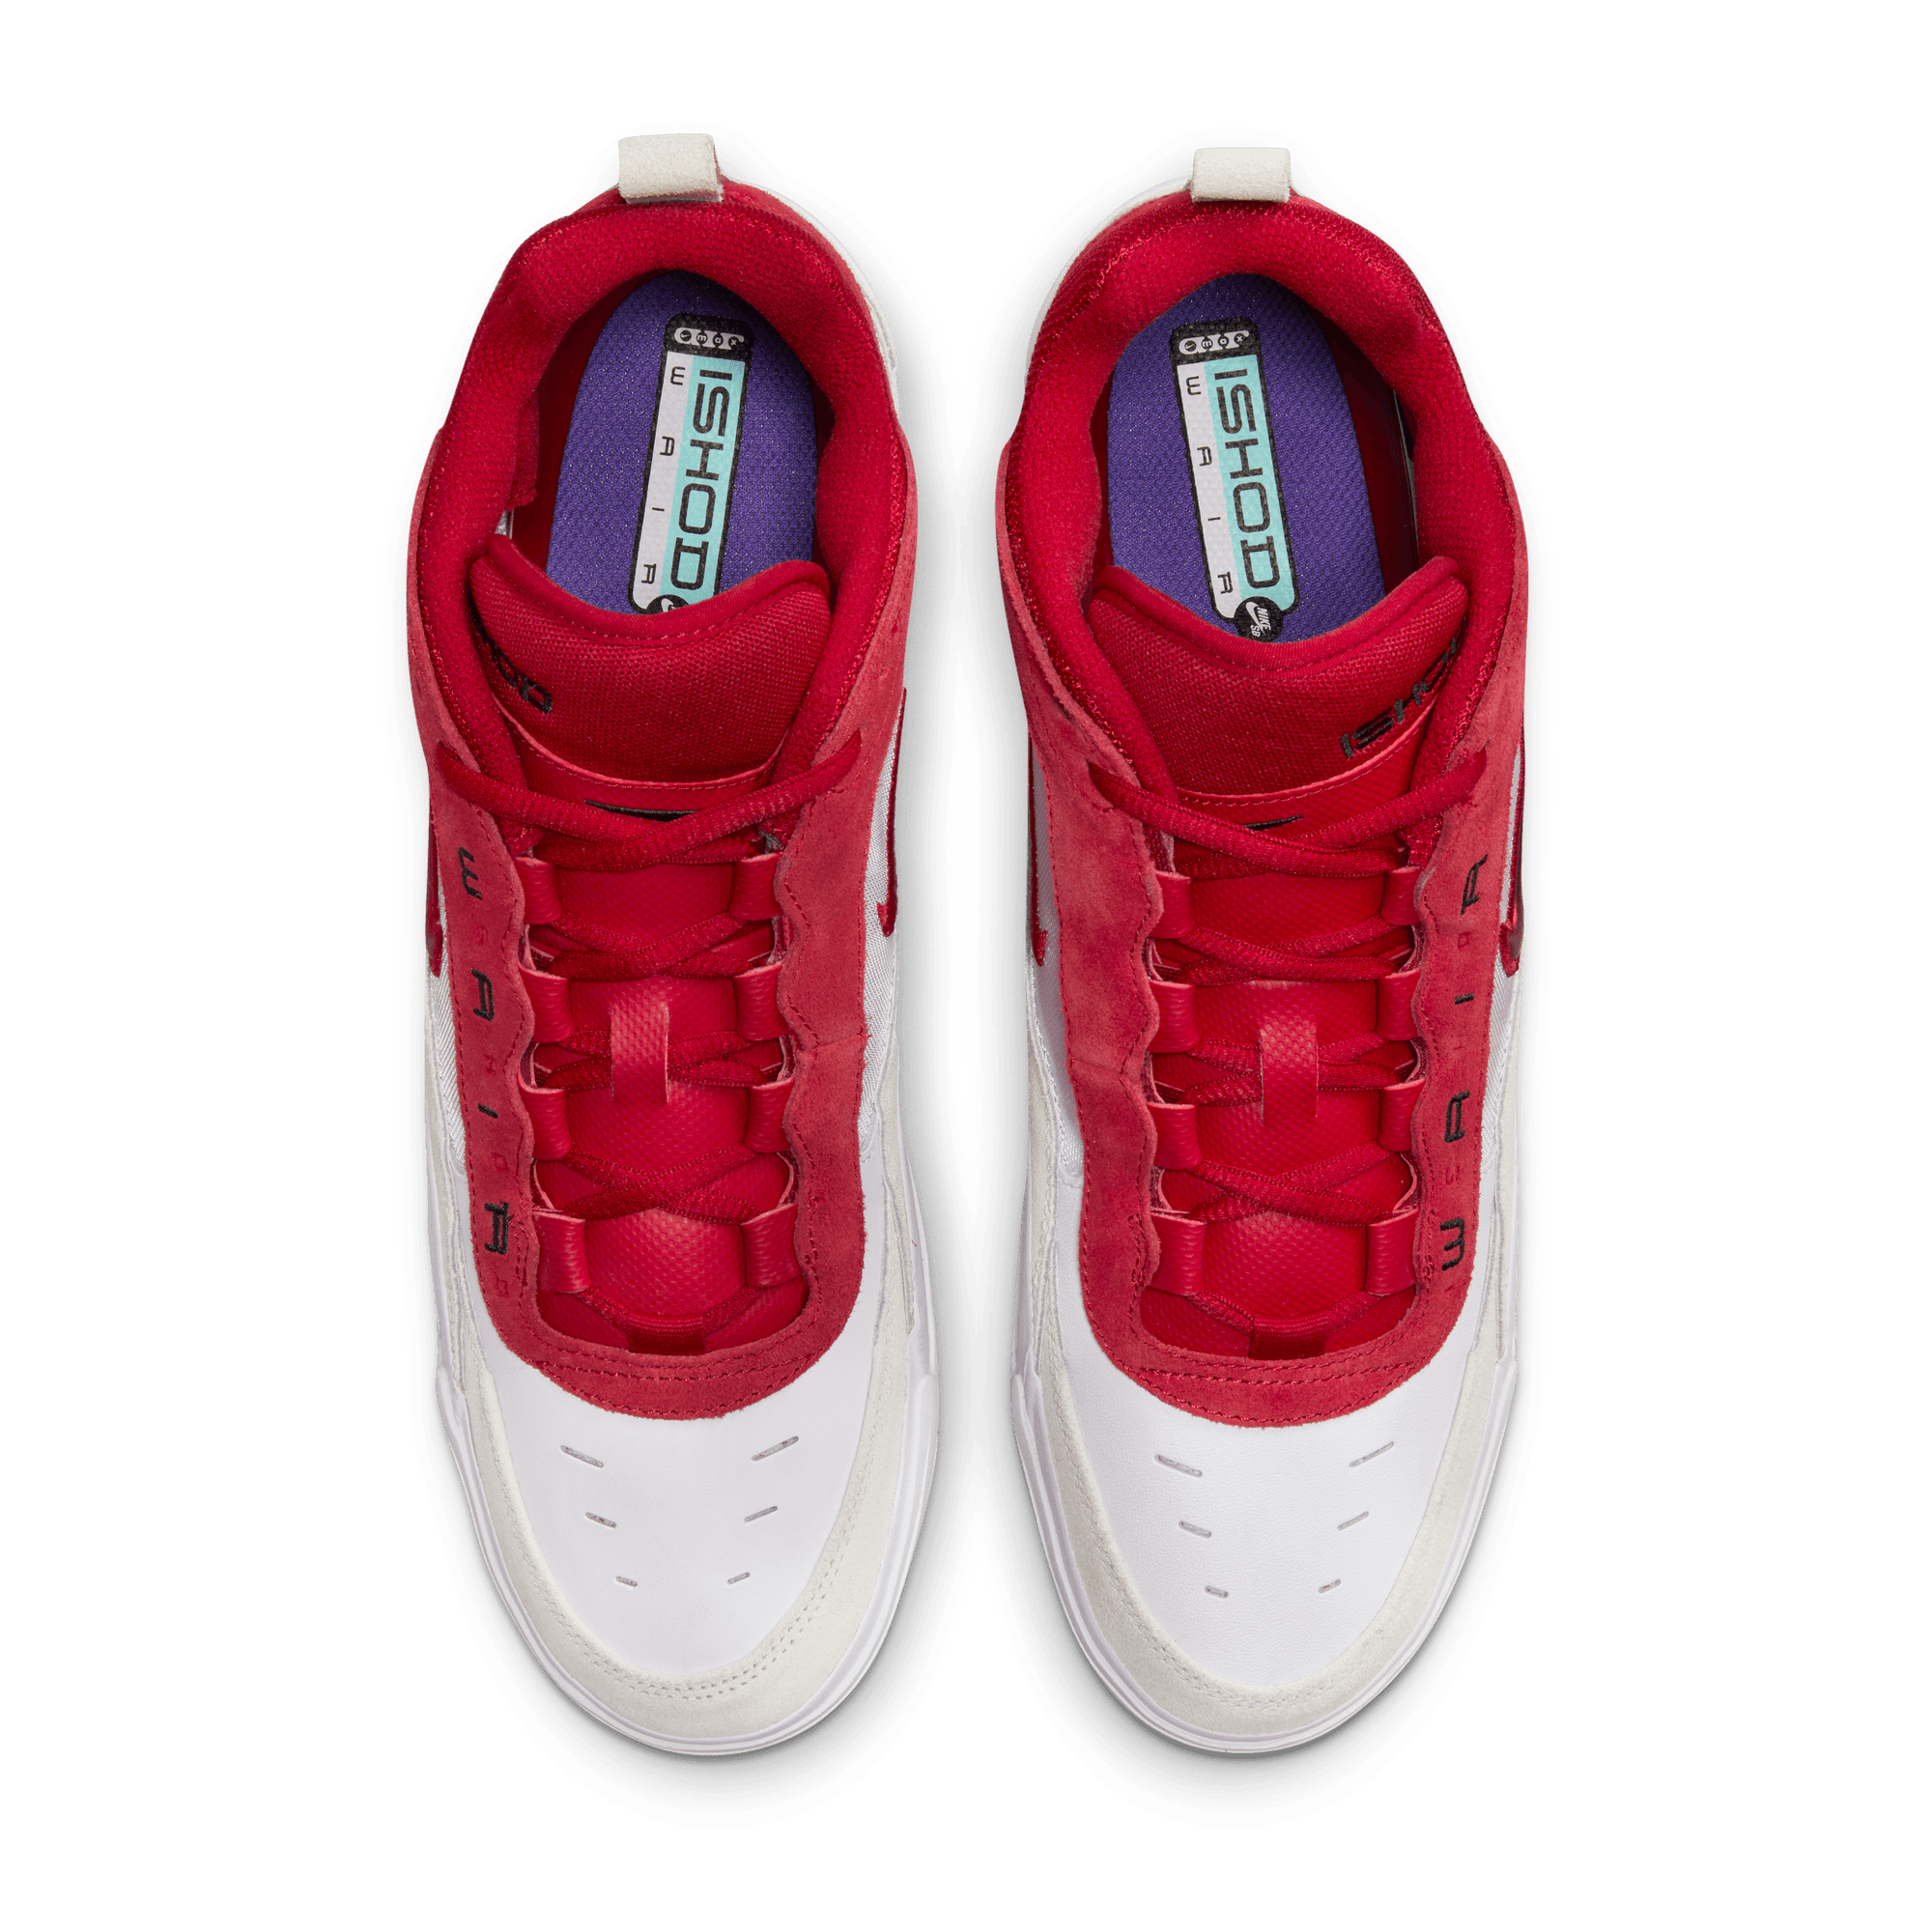 White/Varsity Red Air Max Ishod Wair Nike SB Skate Shoe Top